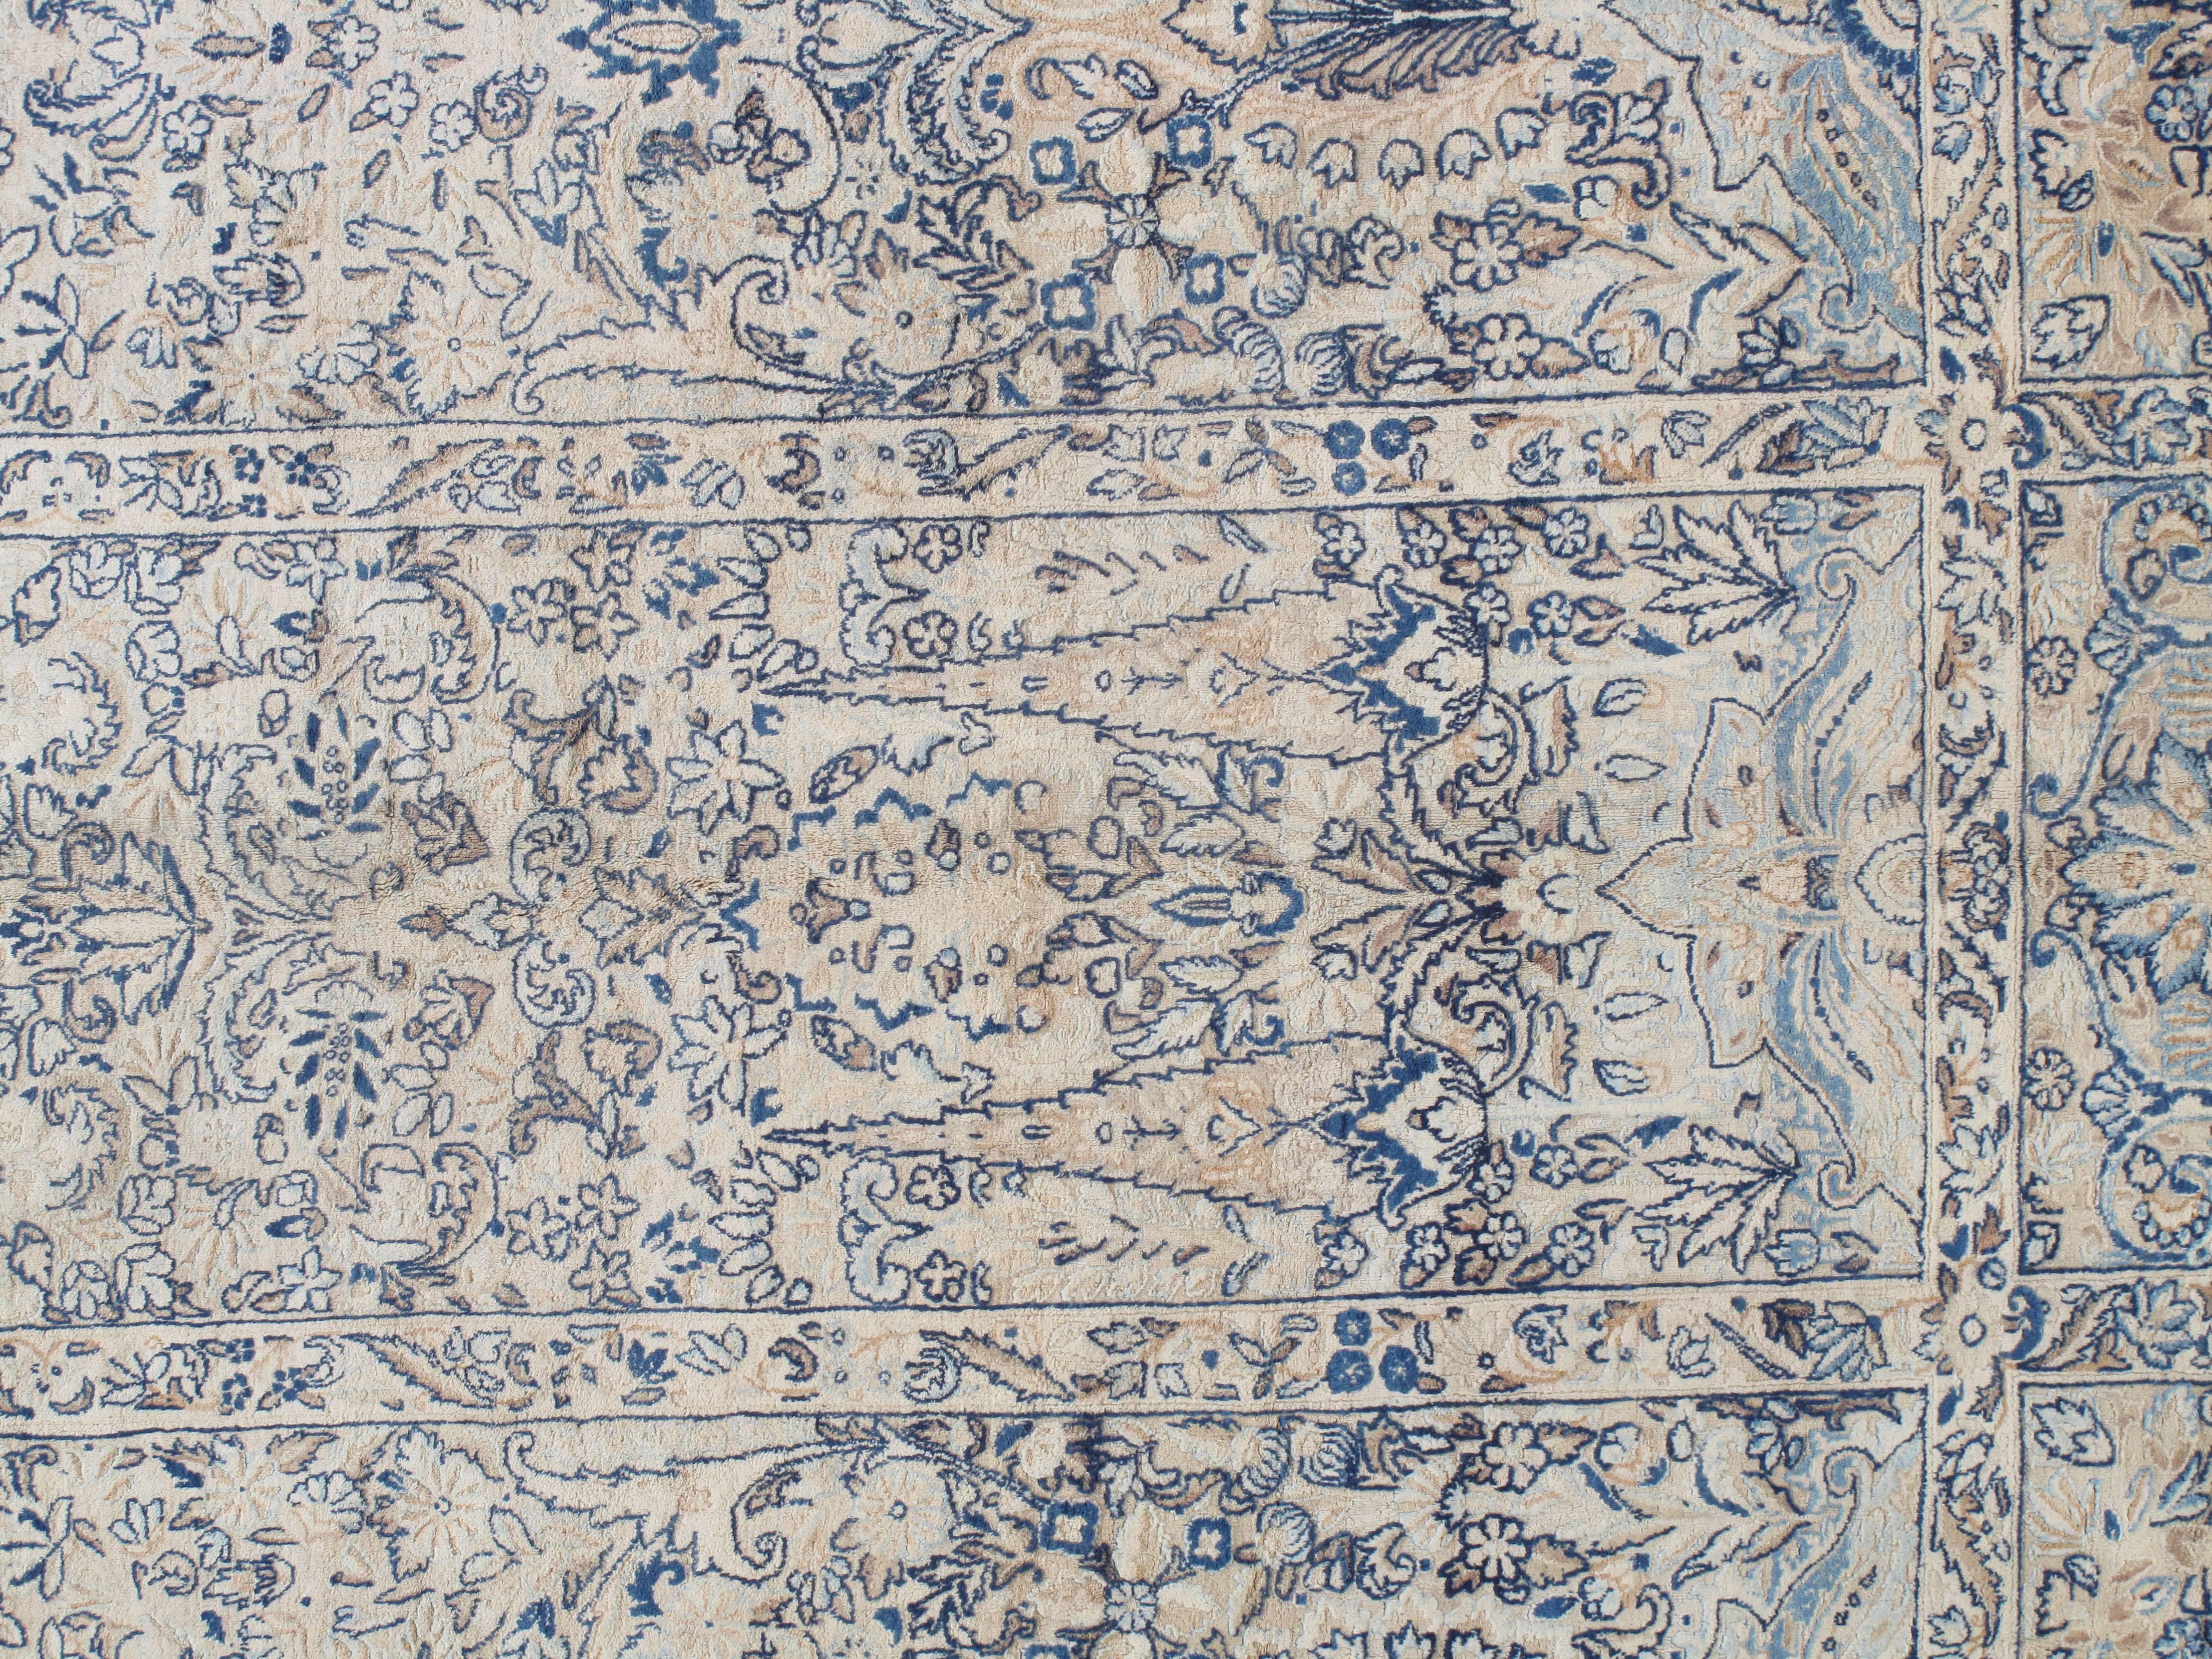 Dieser meisterhaft gefertigte persische Laver-Kerman-Teppich ist ein Beispiel für das tiefe Verständnis der künstlerischen Prinzipien von Gleichgewicht und Harmonie, die antike Teppiche auf Kunstebene so inspirierend machen, dass man gerne mit ihnen